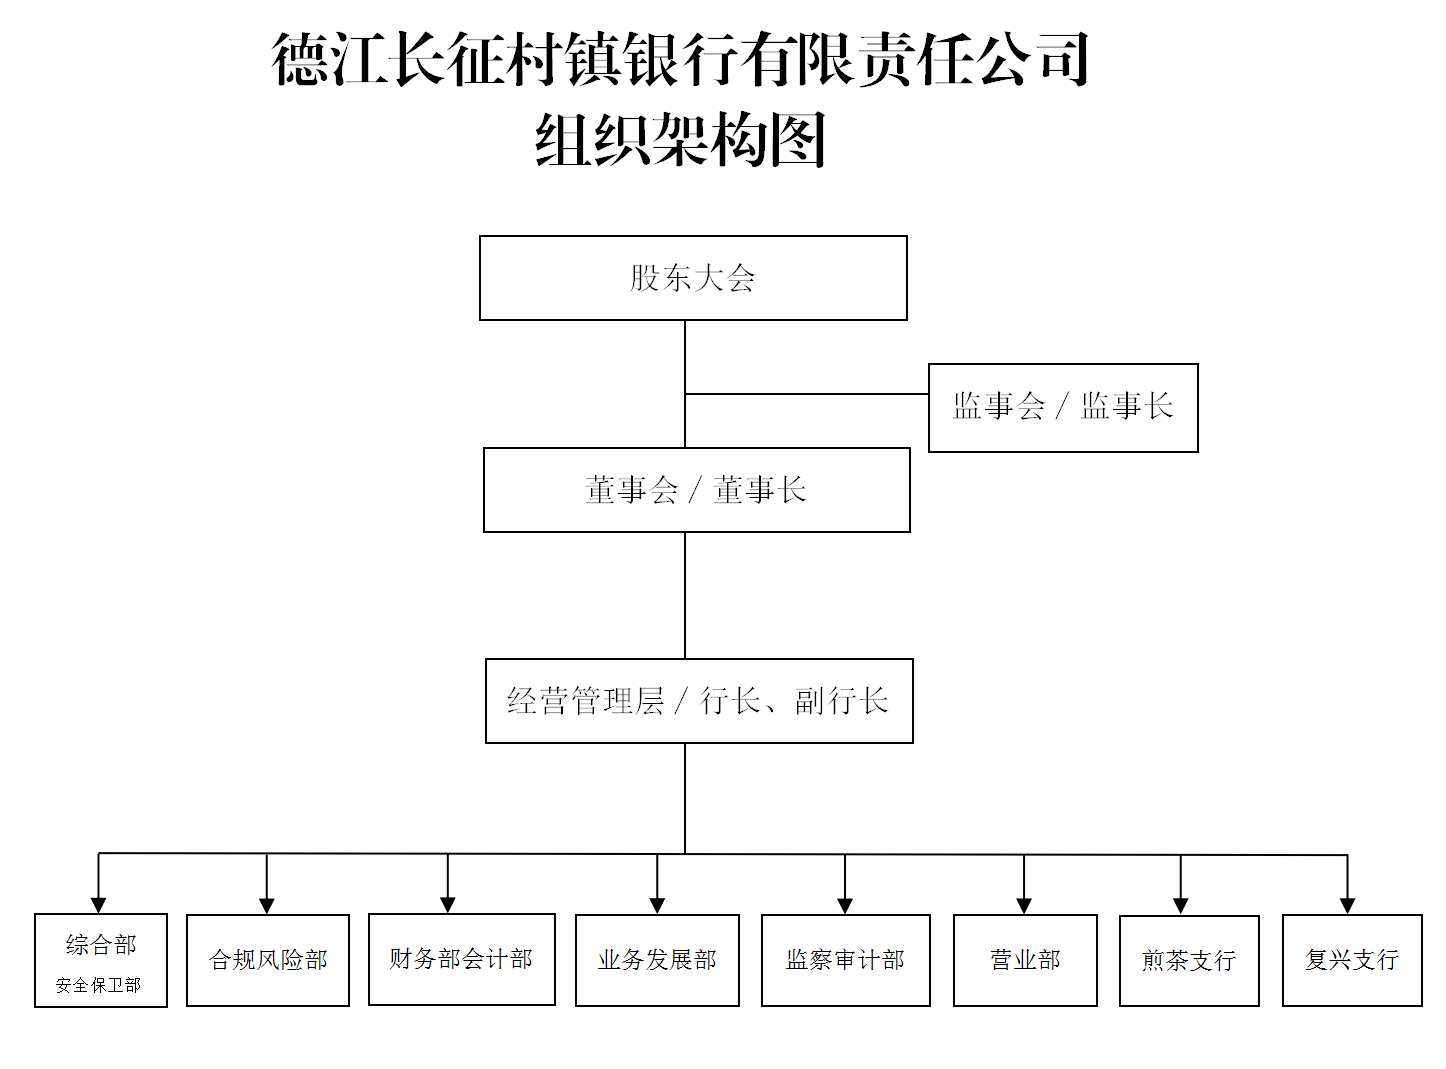 德江长征村镇银行组织架构图_01(1)